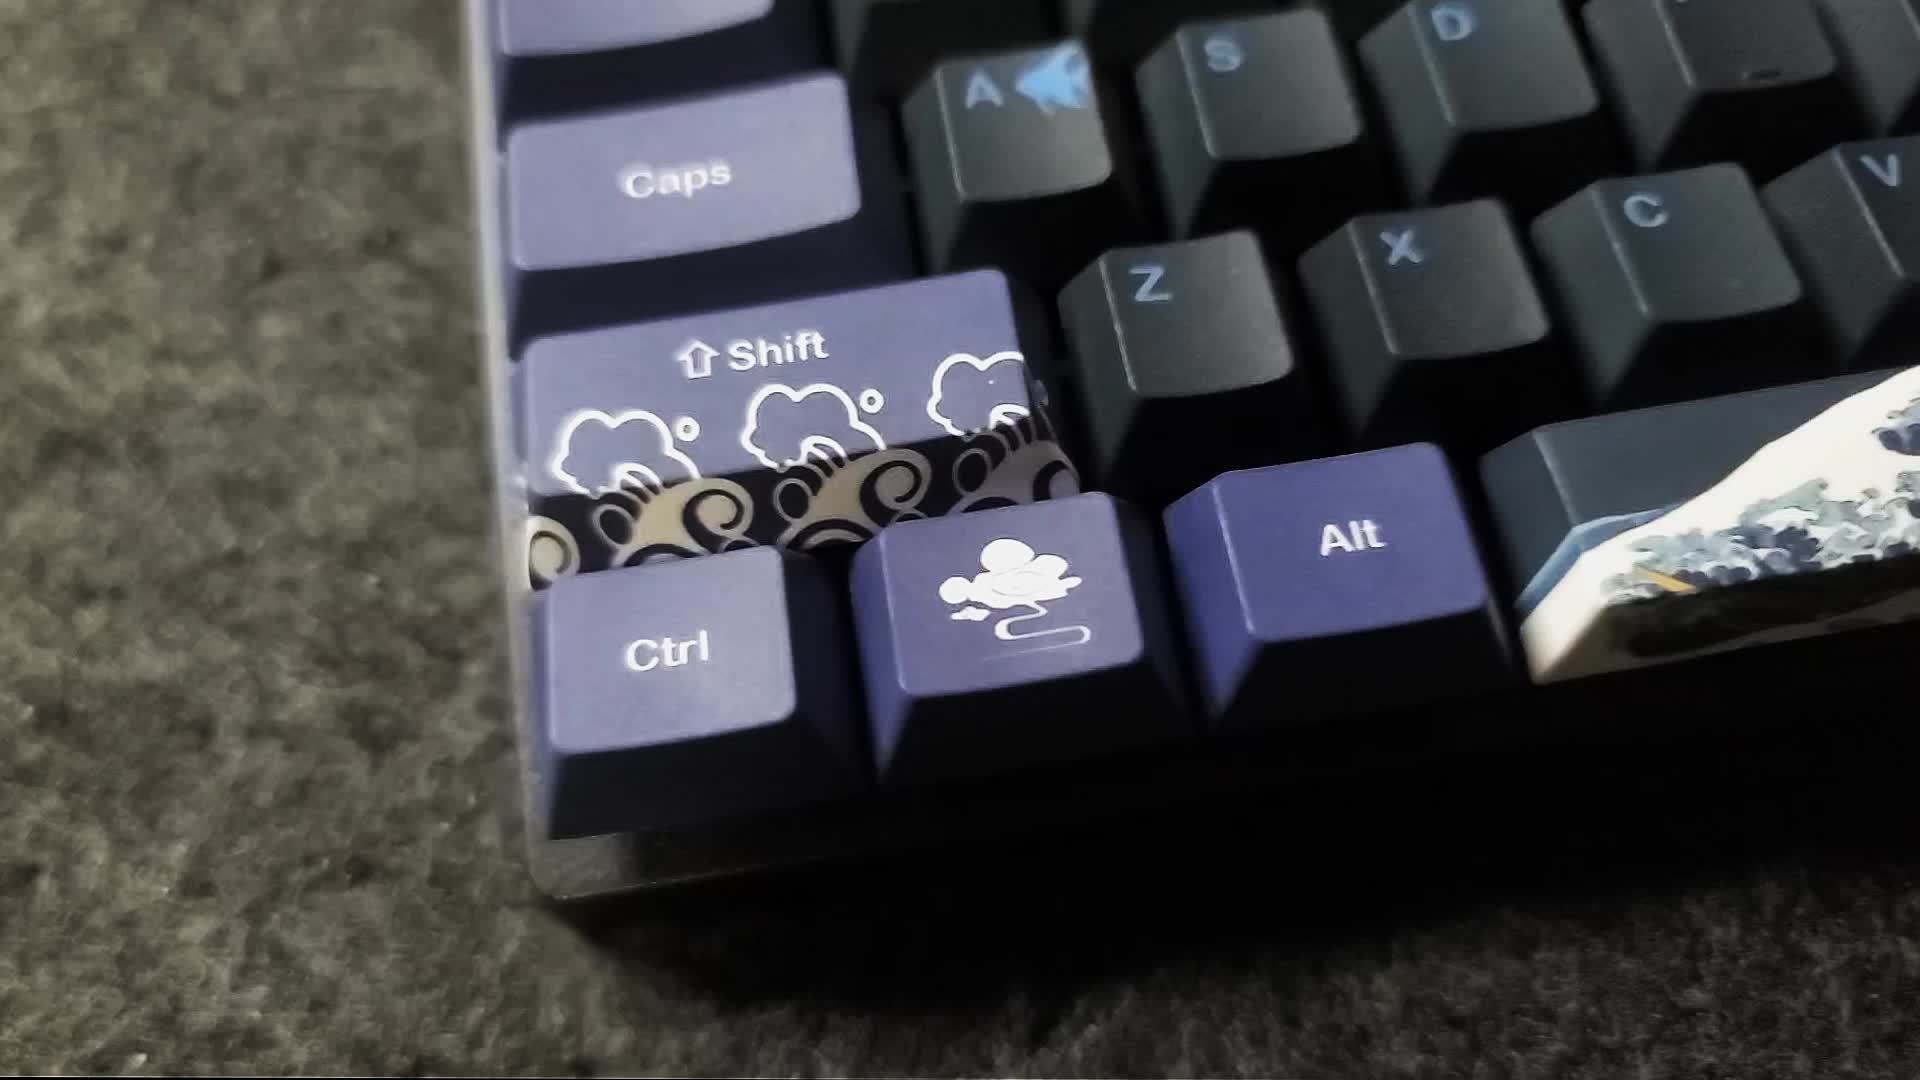 60% Keyboard Custom Keycaps ( ANSI | 61 Keys )